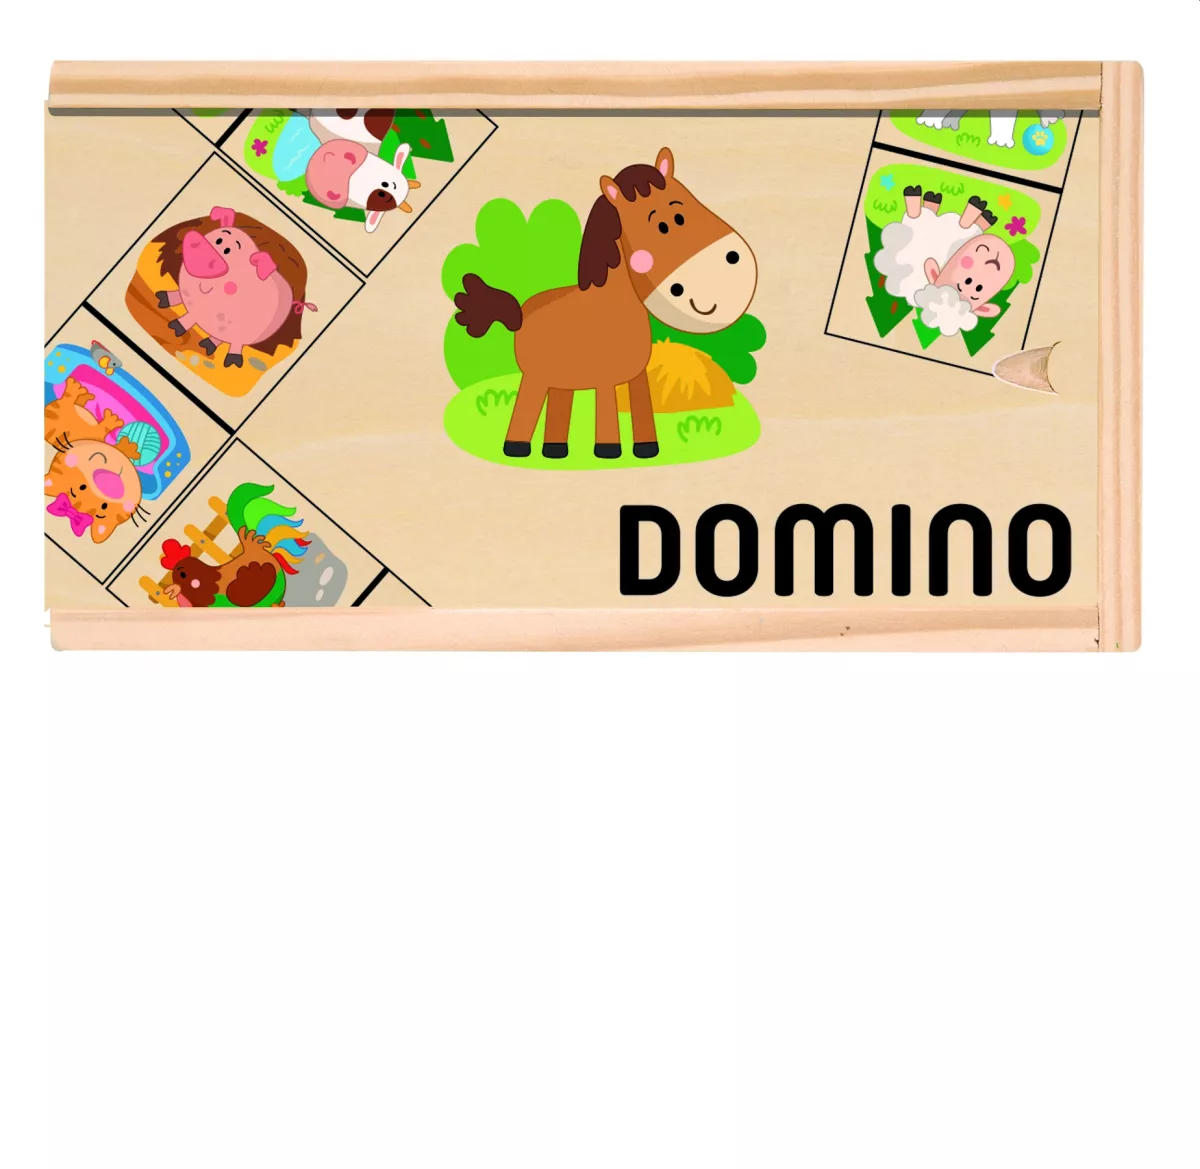 Domino animale domestice